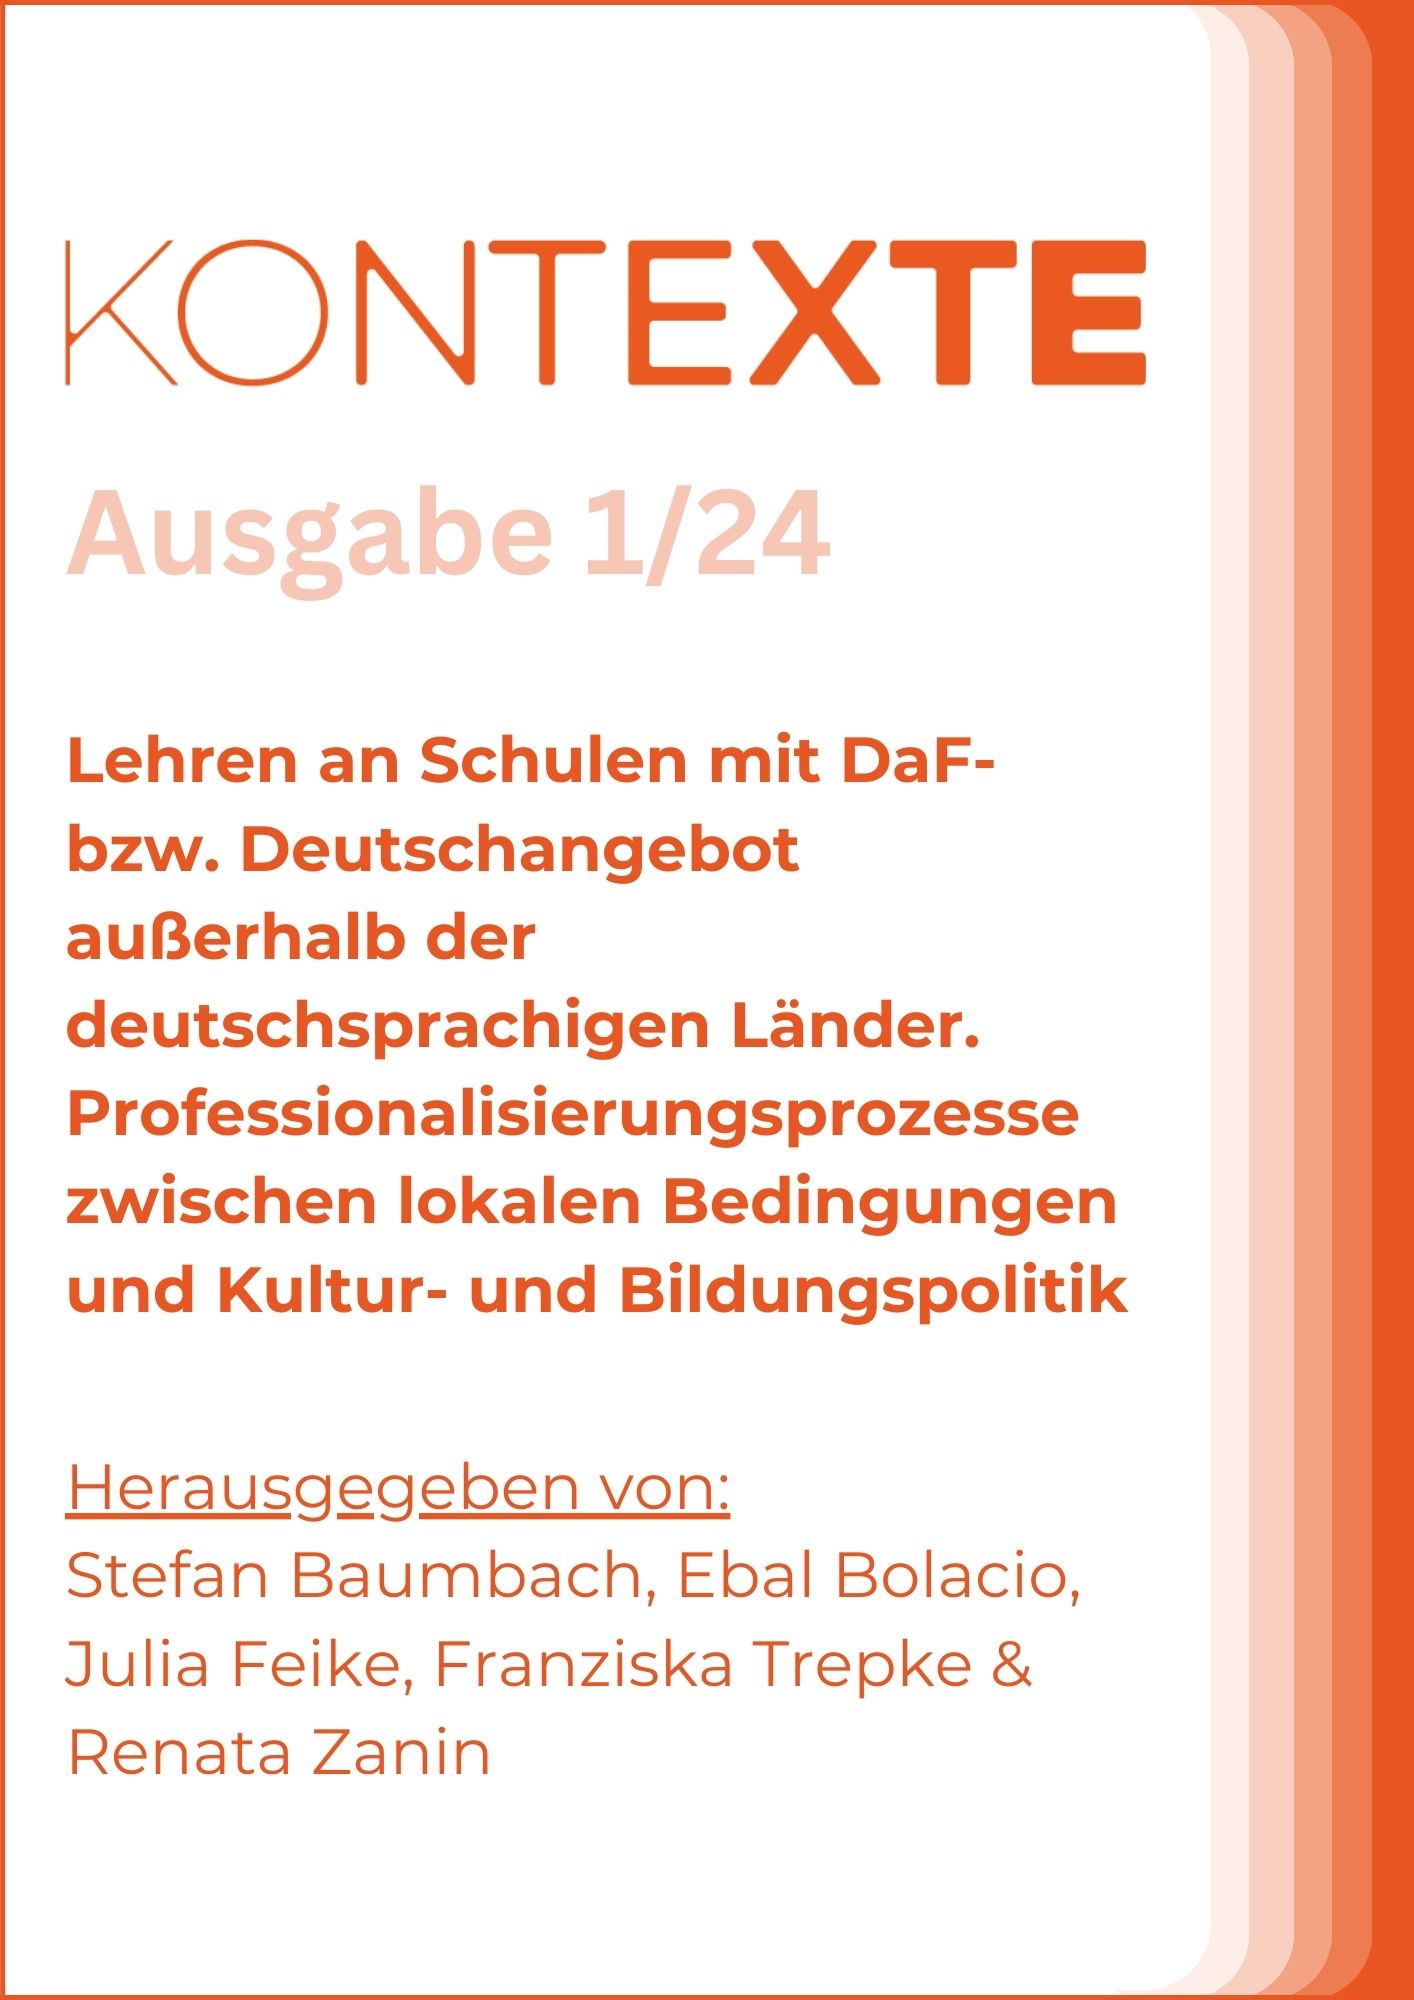 KONTEXTE-Logo in Orange und Titel der Zeitschrift, Namen der Herausgebenden